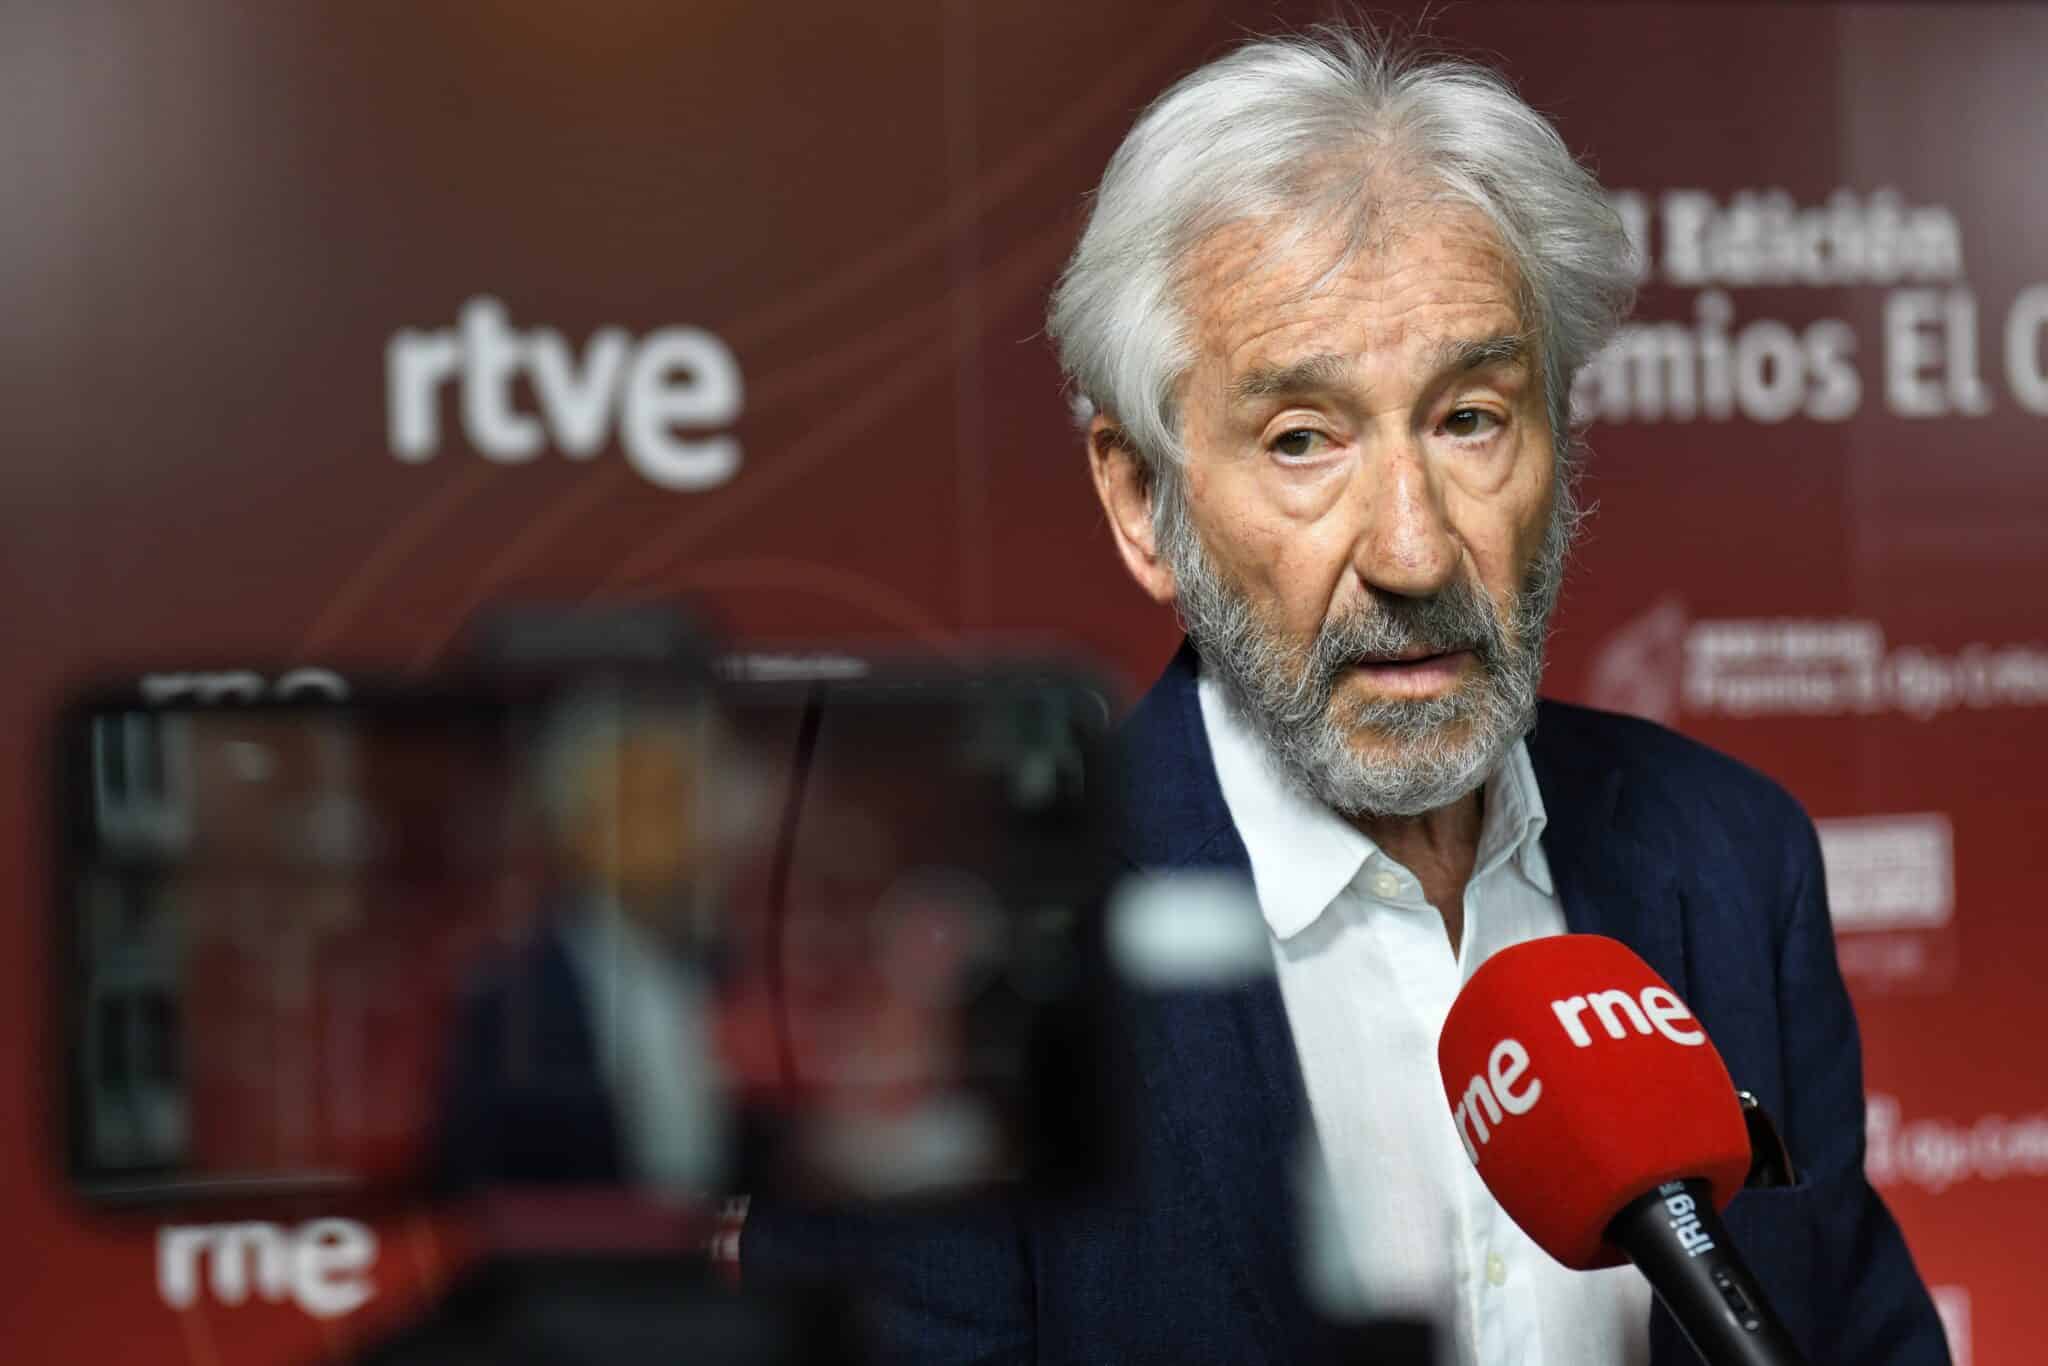 El actor José Sacristán, ofrece declaraciones a los medios a su llegada a la XXXII edición de los Premios ‘El Ojo Crítico’ de Radio Nacional de España